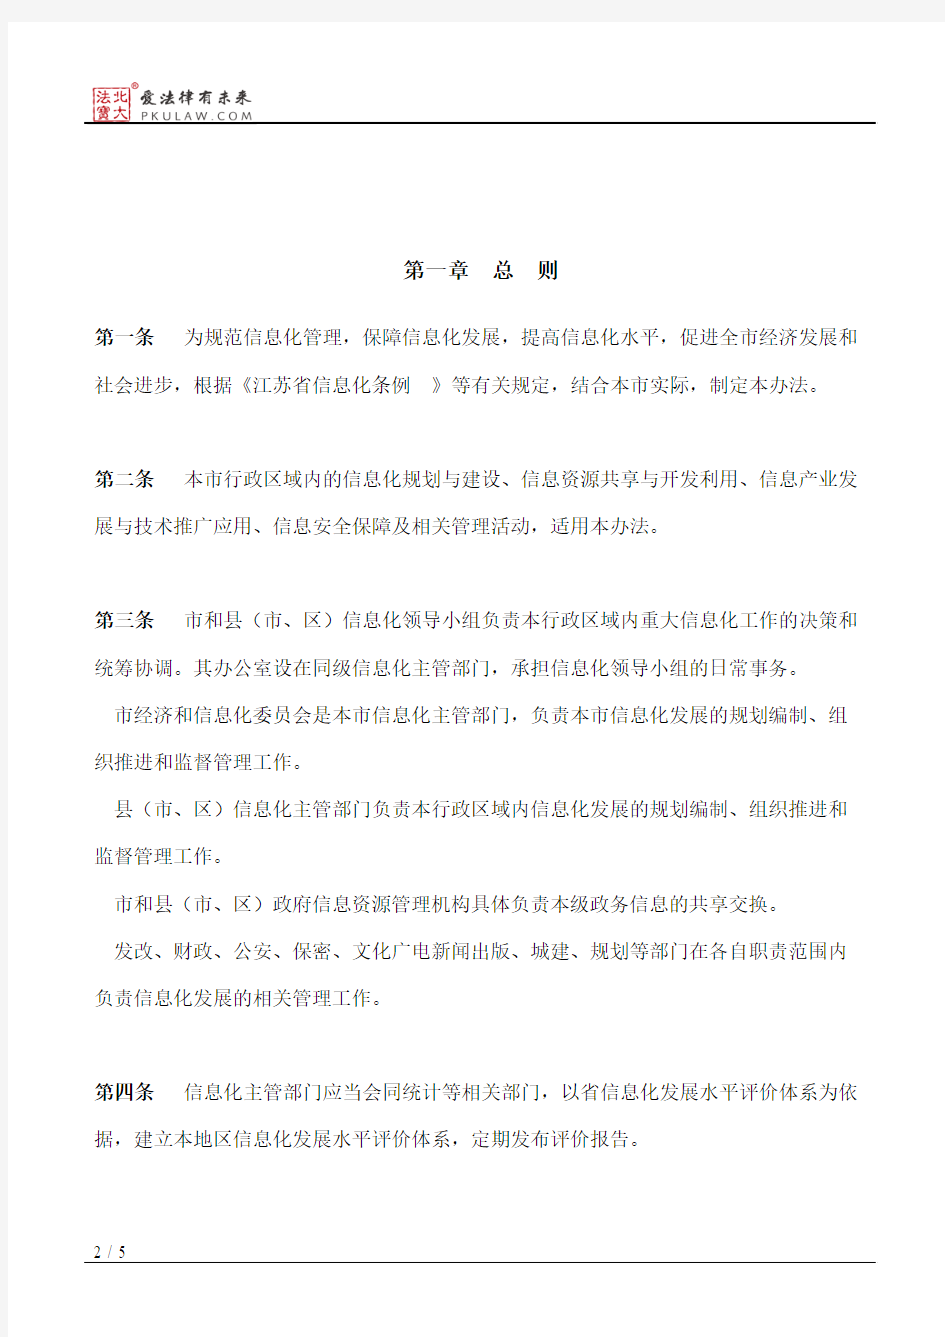 扬州市人民政府关于印发《扬州市信息化管理办法》的通知